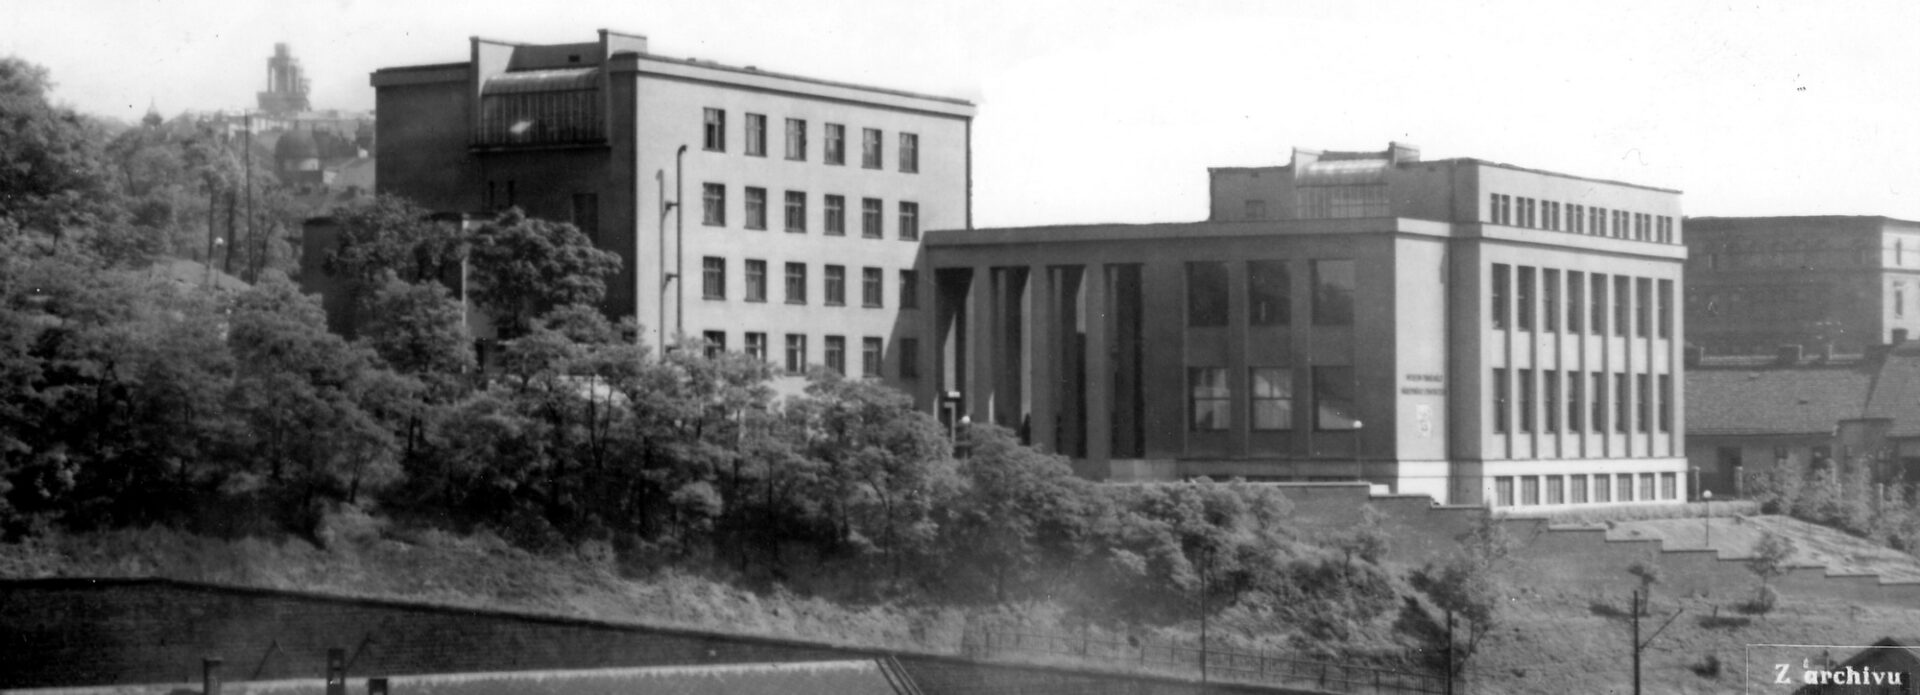 Století s vojenským muzeum: z historie Armádního muzea Žižkov od jeho otevření v roce 1932